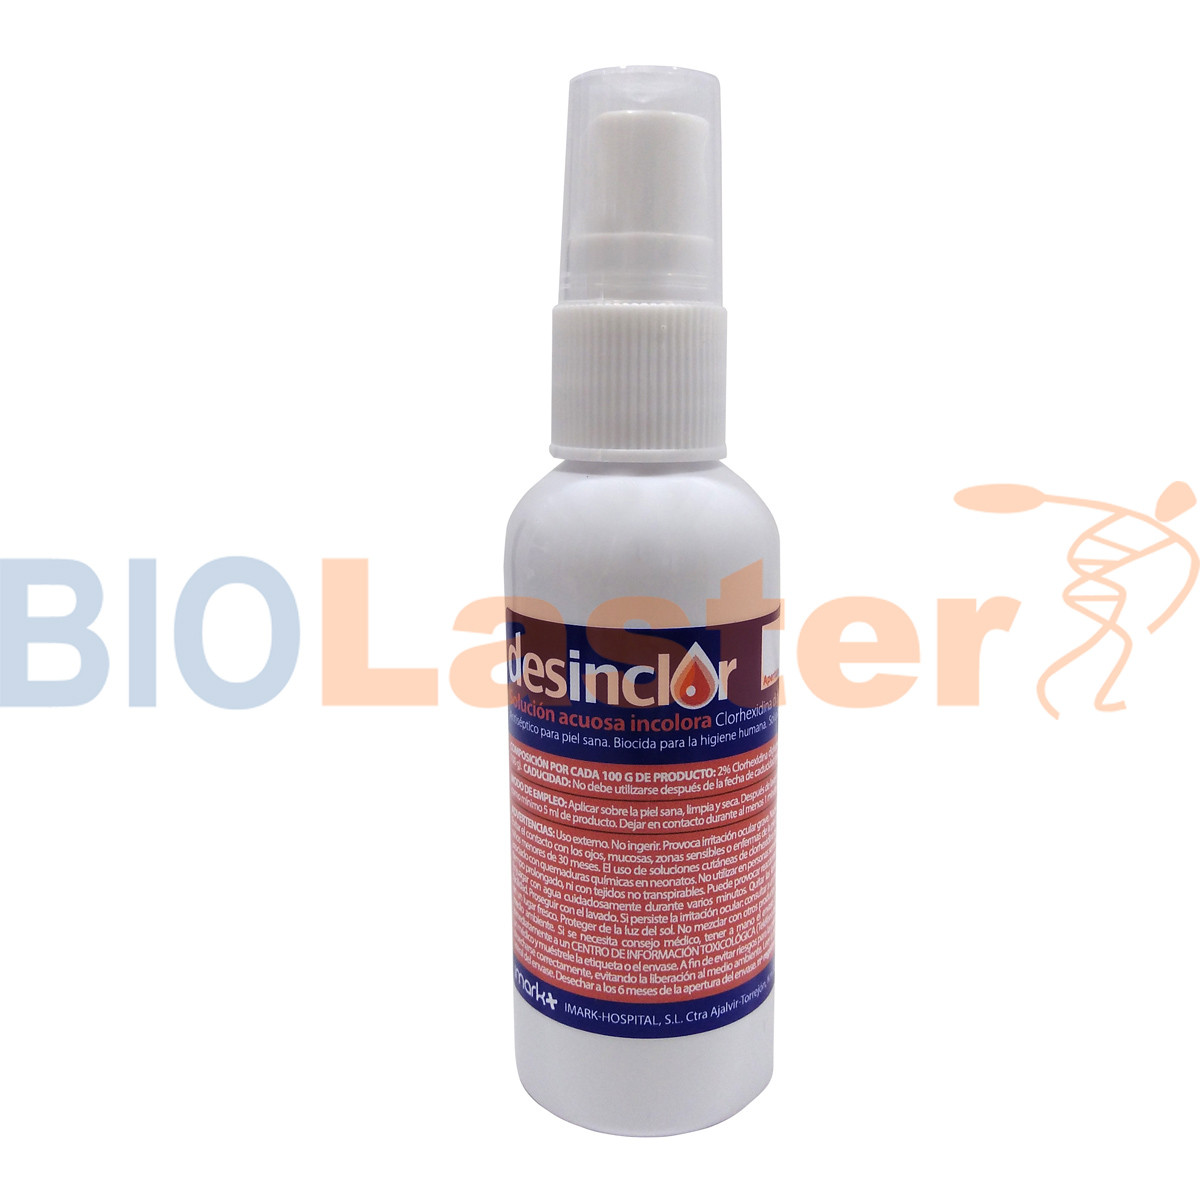 clorhexidina-en-spray-producto-y-uso